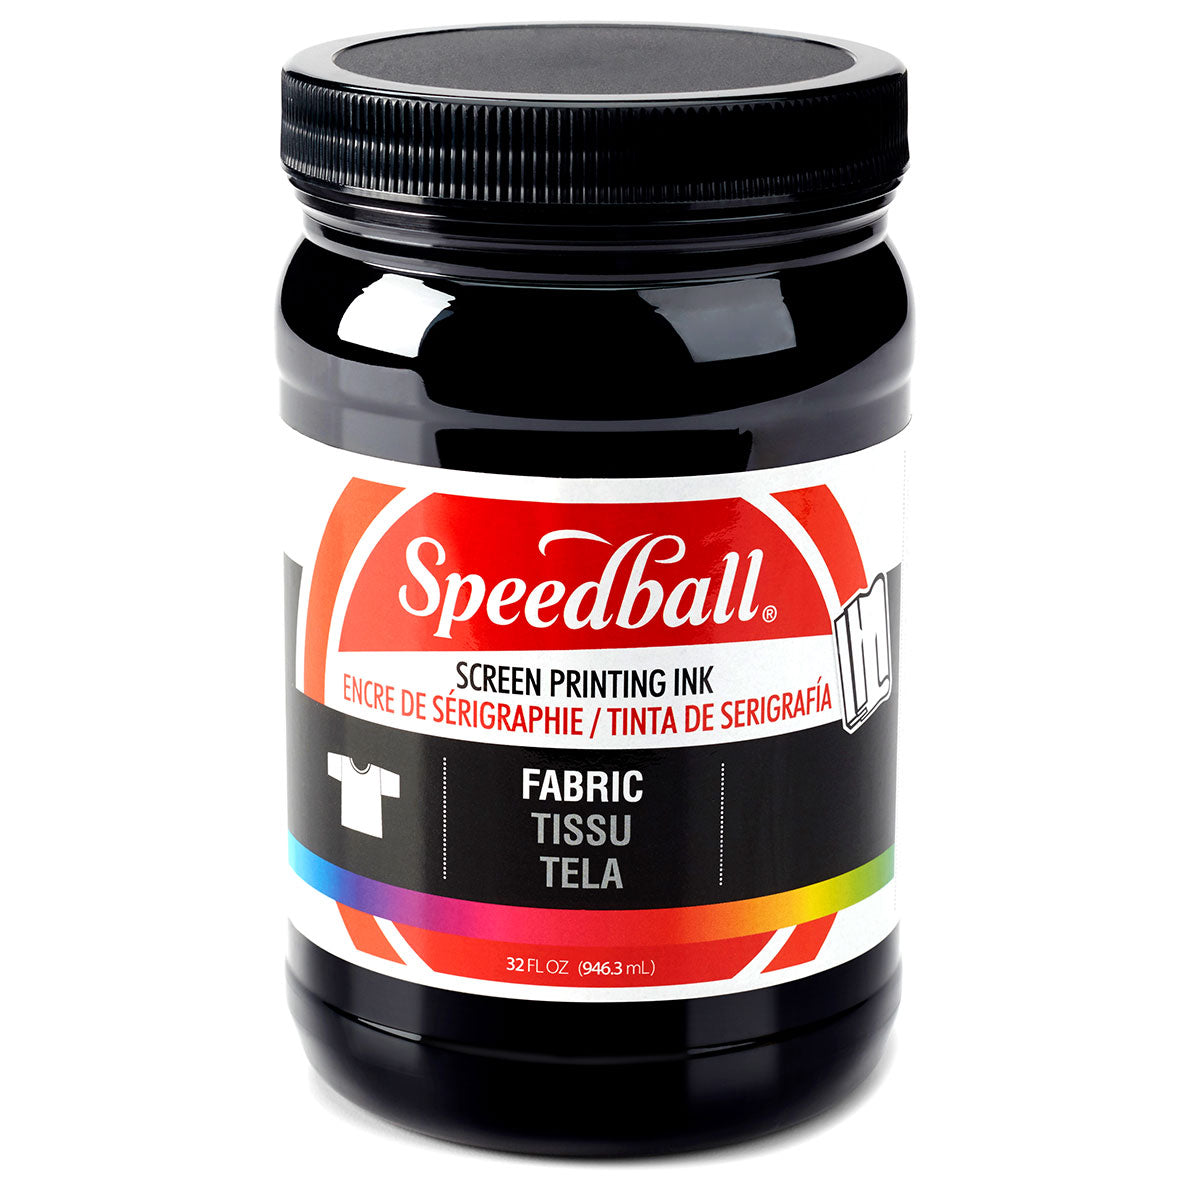 Speedball - Stoff-Siebdruckfarbe 946ml (32oz) - Schwarz